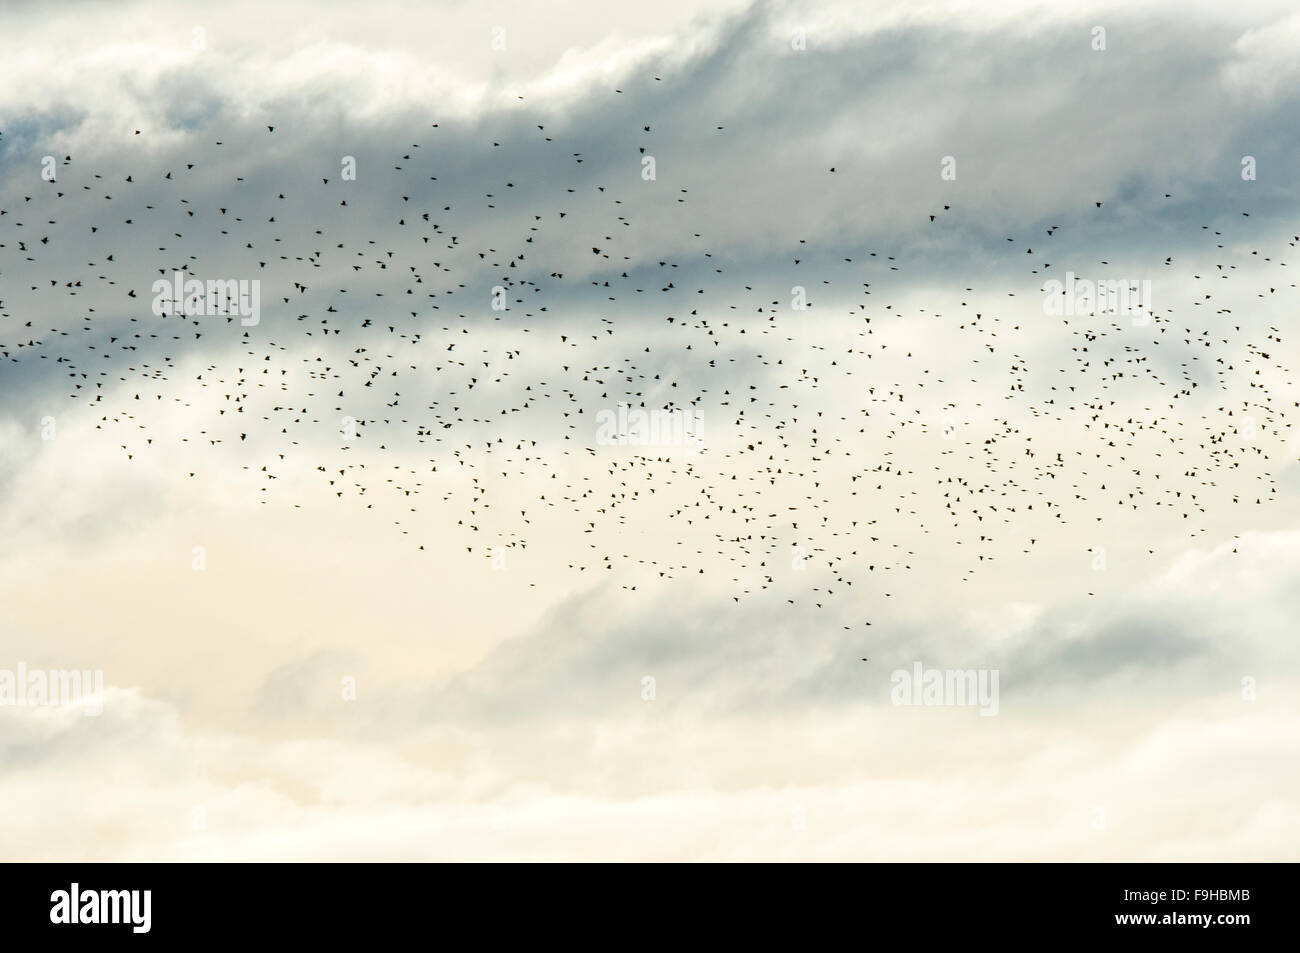 Migrieren von Herde von Amseln gegen die Wolken Stockfoto